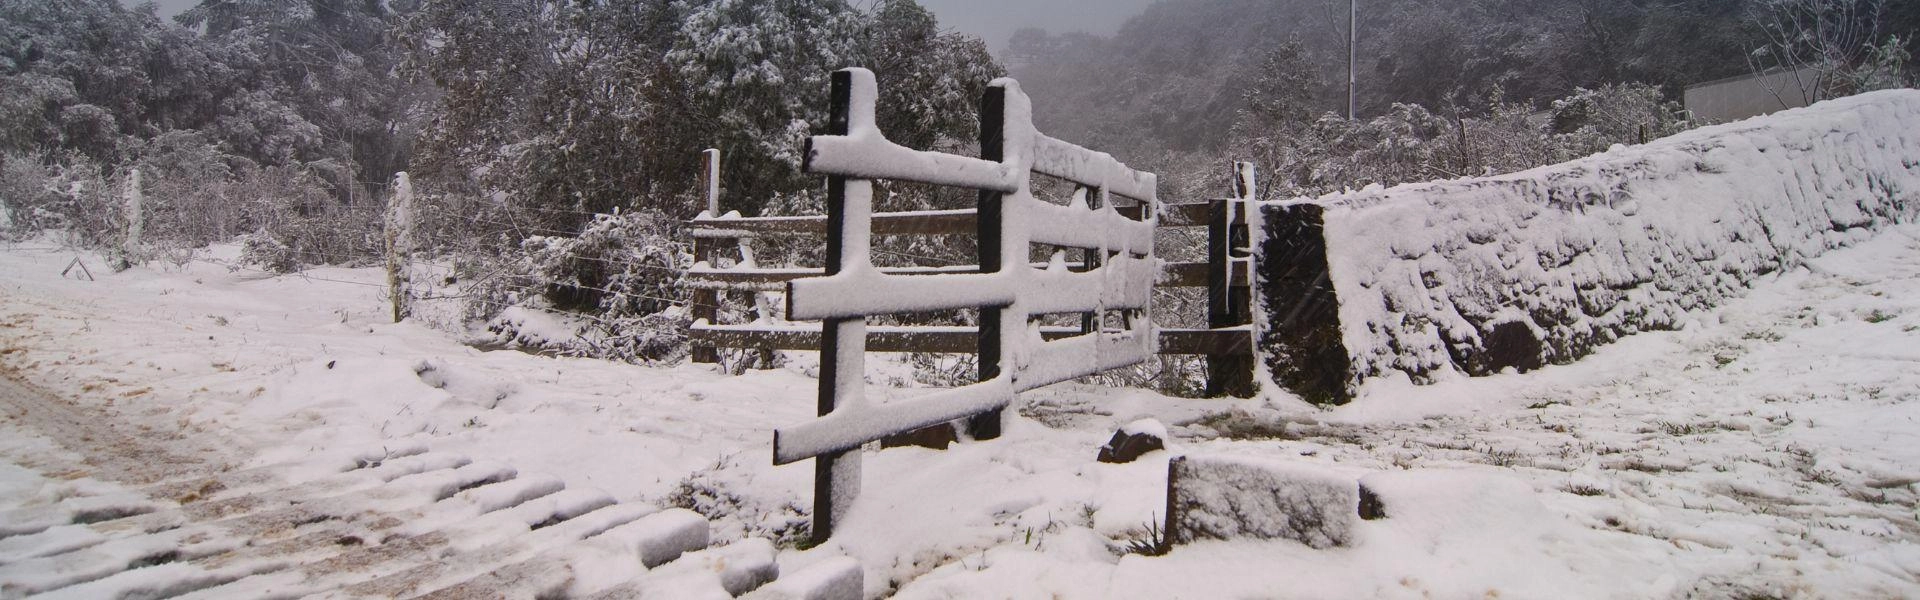 Portão de uma fazenda em Urubici, Santa Catarina, uma das cidades pertencentes ao Roteiro Turístico Caminhos da Neve